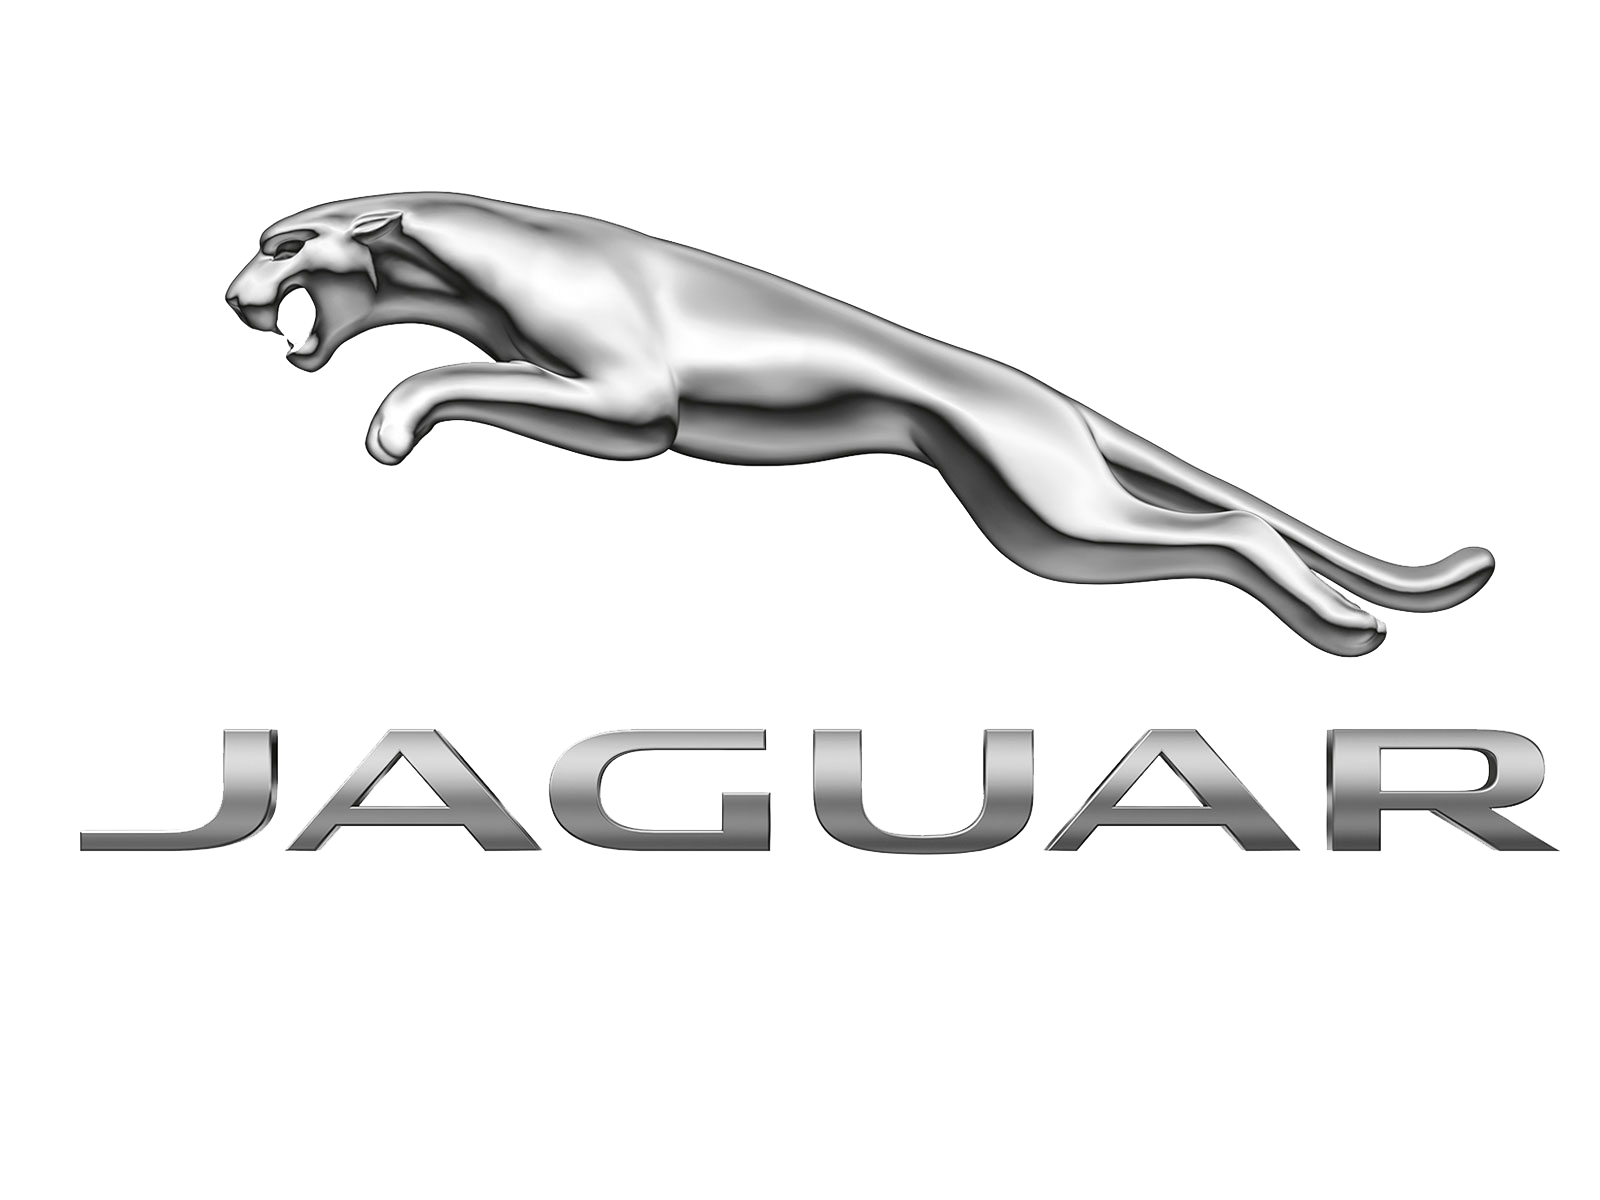 jaguar clipart school